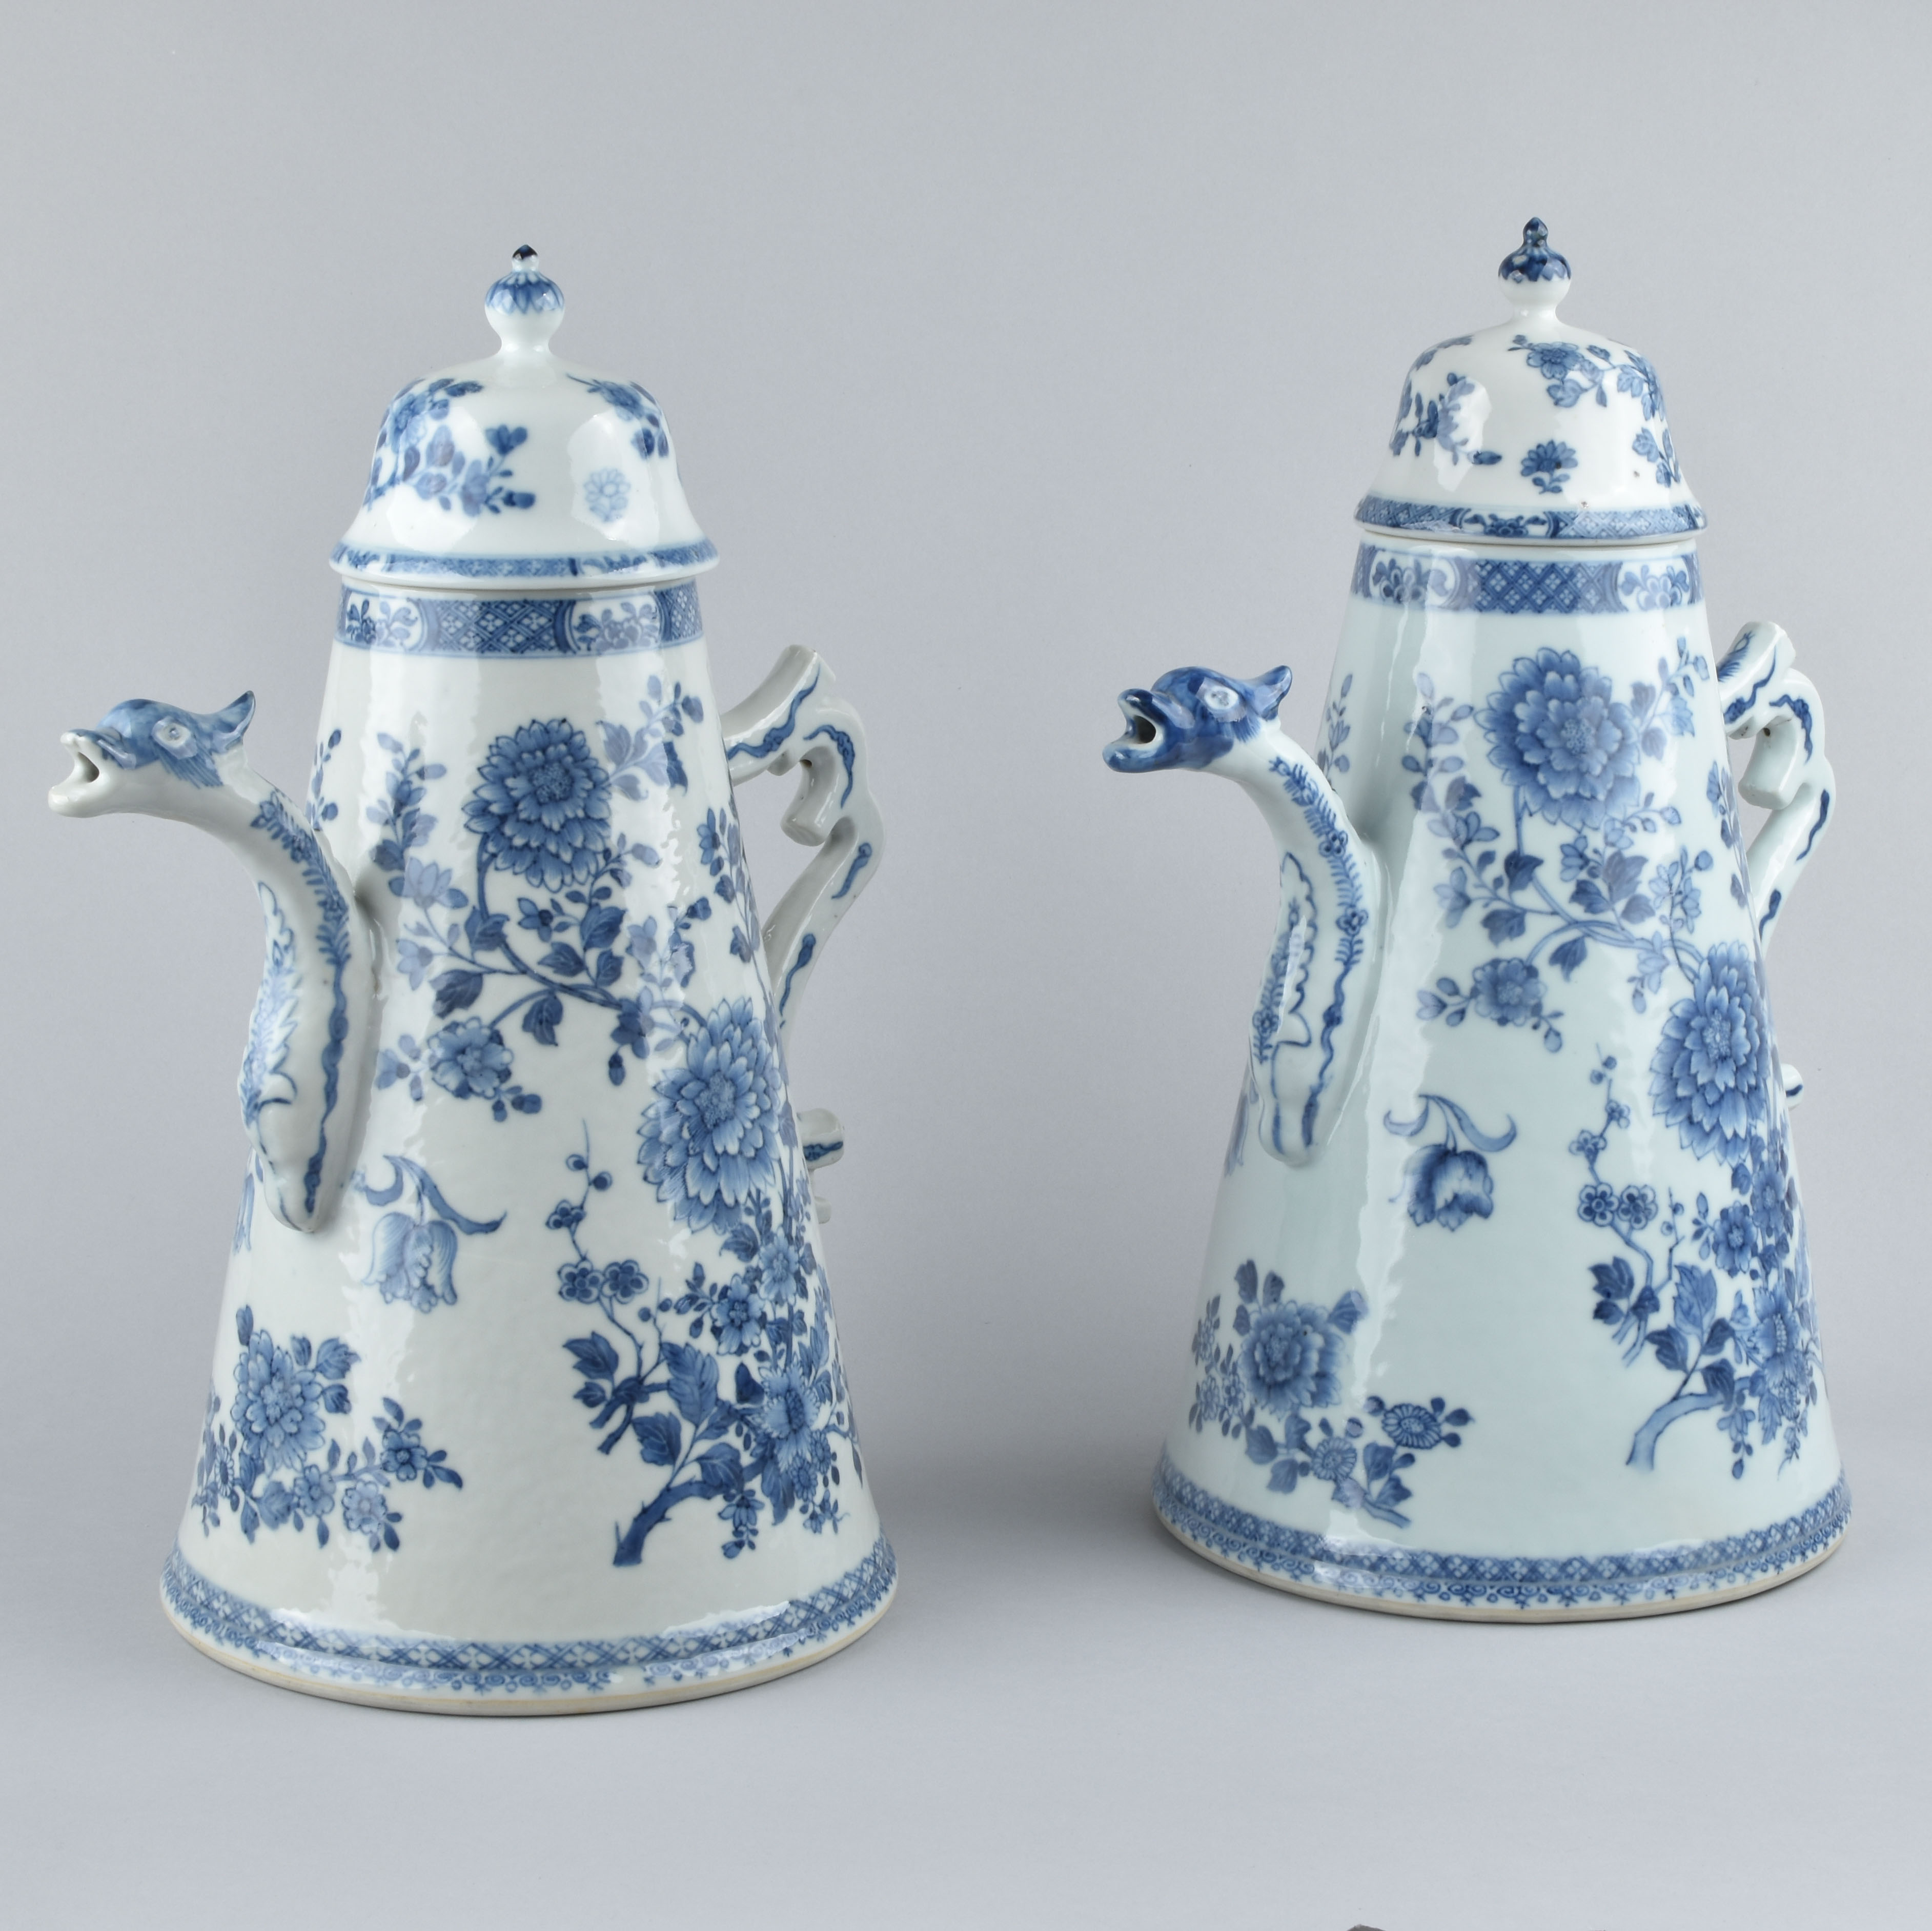 Porcelaine Époque Qianlong (1736-1795), vers 1730-1740 , Chine